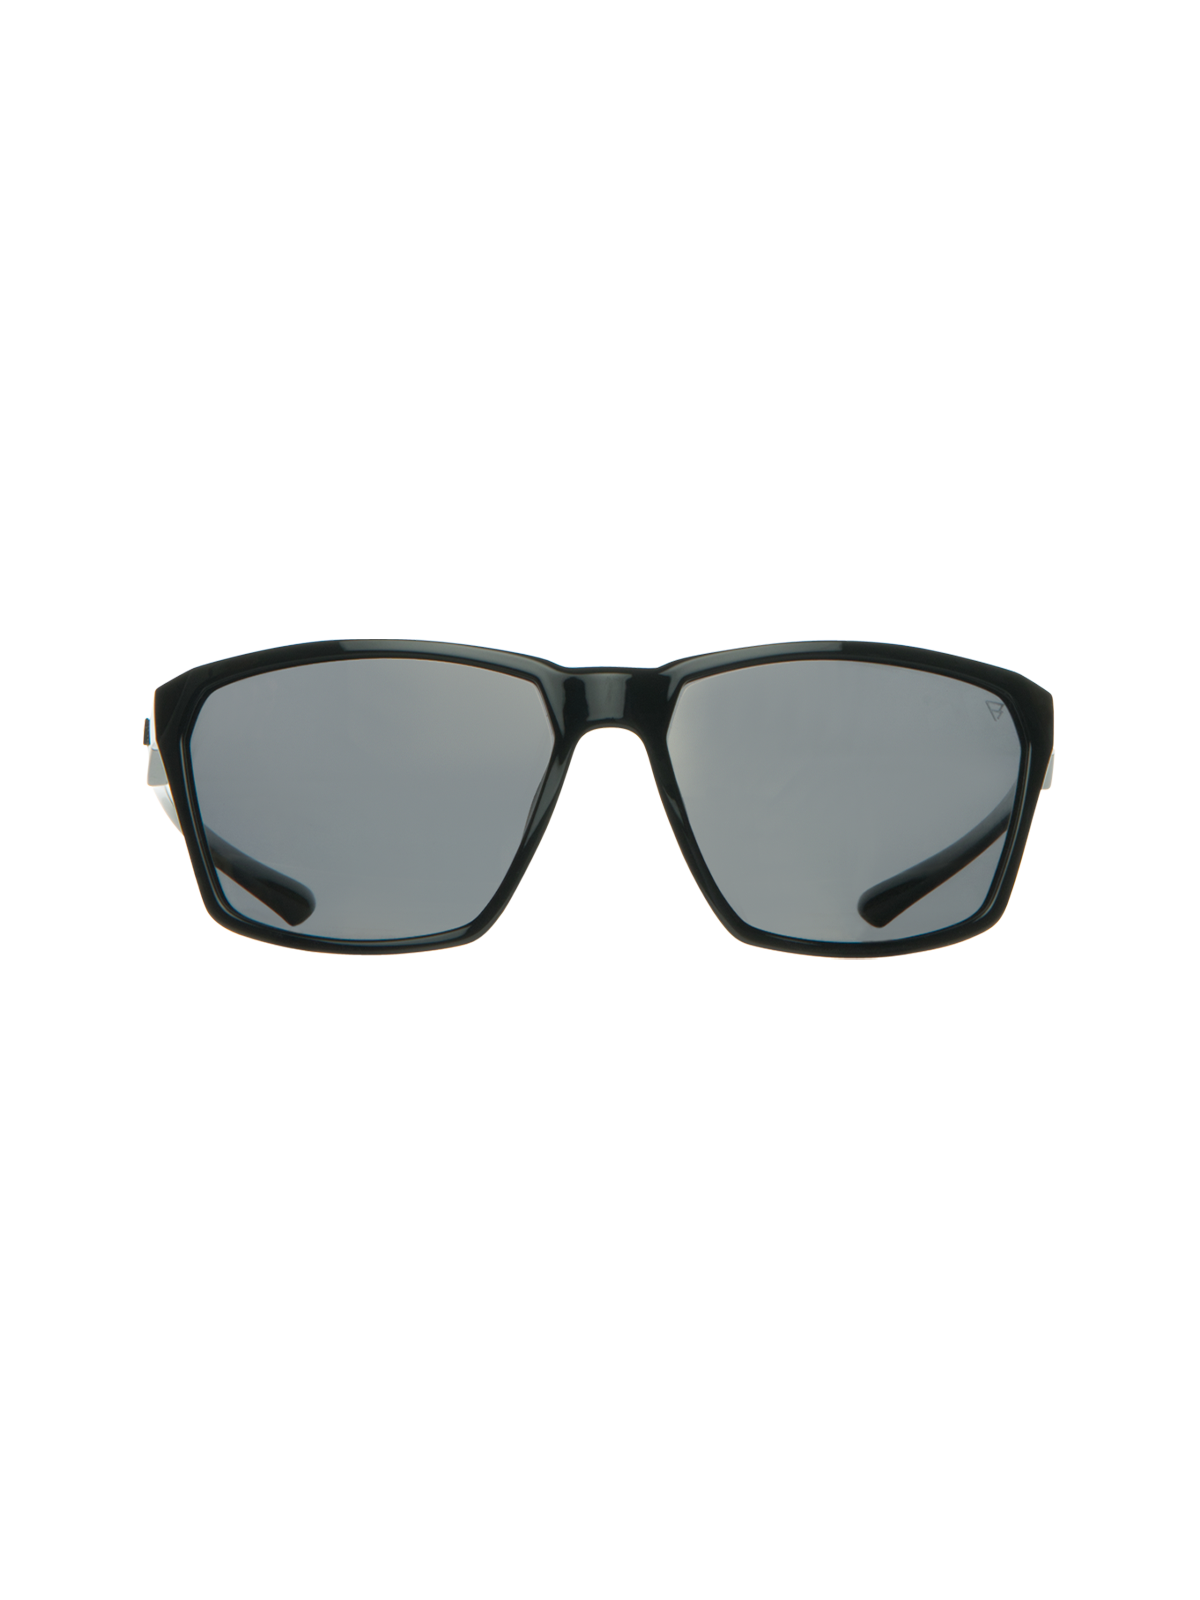 Cosmos Unisex Sunglasses | Black